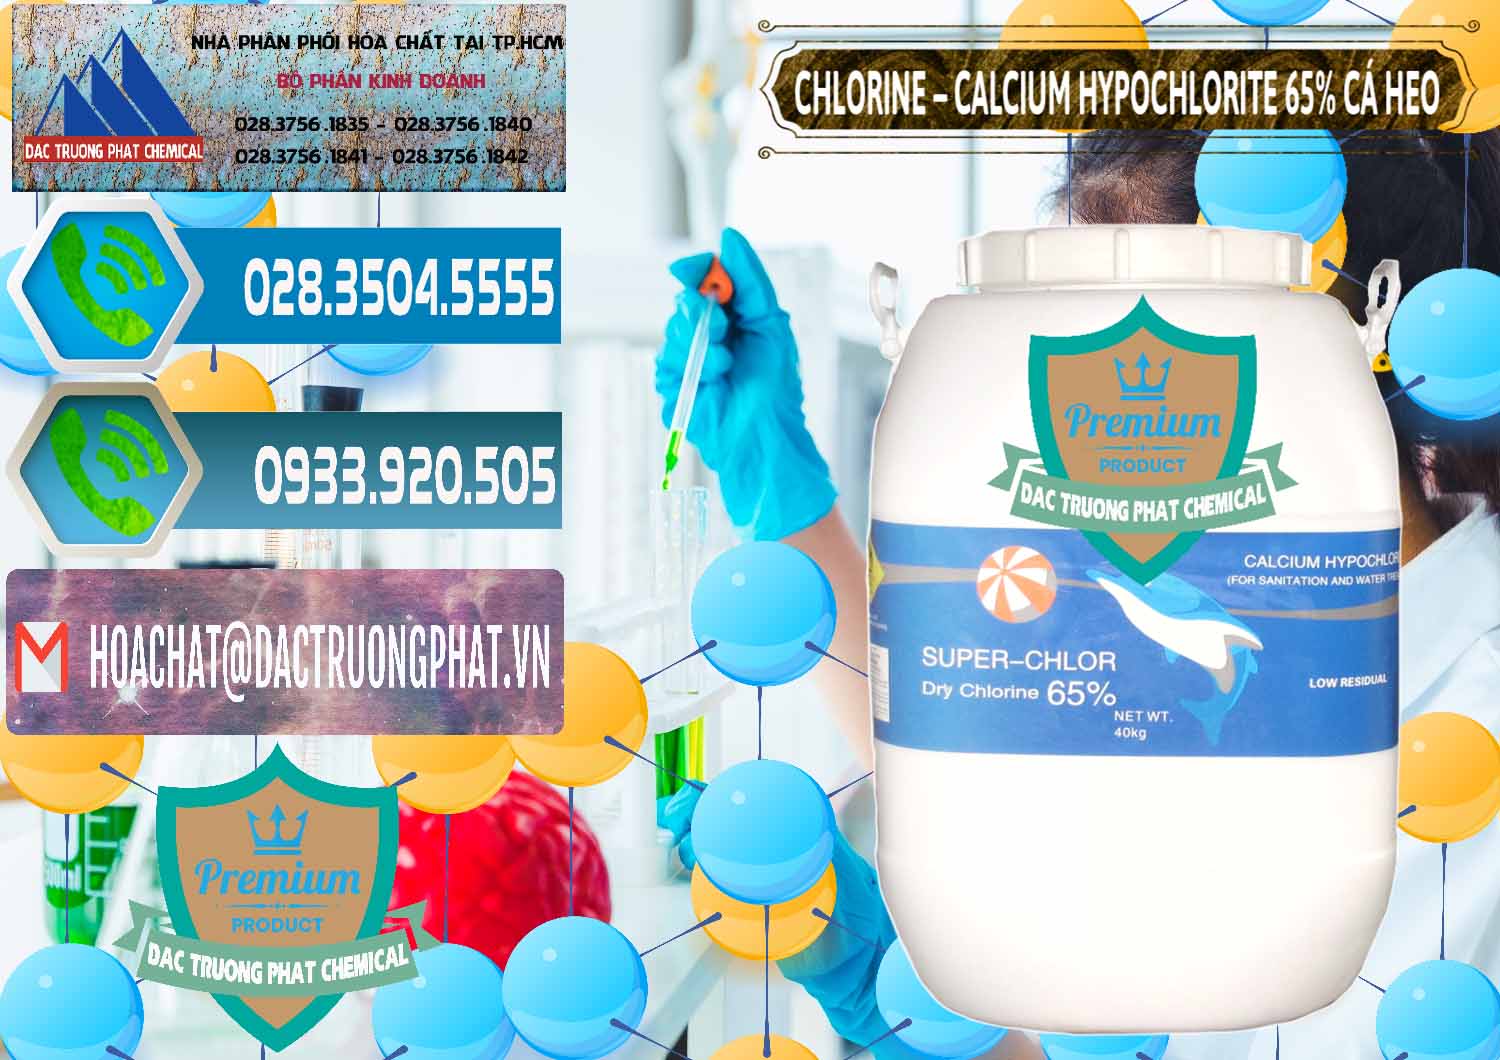 Nhập khẩu & bán Clorin - Chlorine Cá Heo 65% Trung Quốc China - 0053 - Chuyên nhập khẩu & phân phối hóa chất tại TP.HCM - congtyhoachat.net